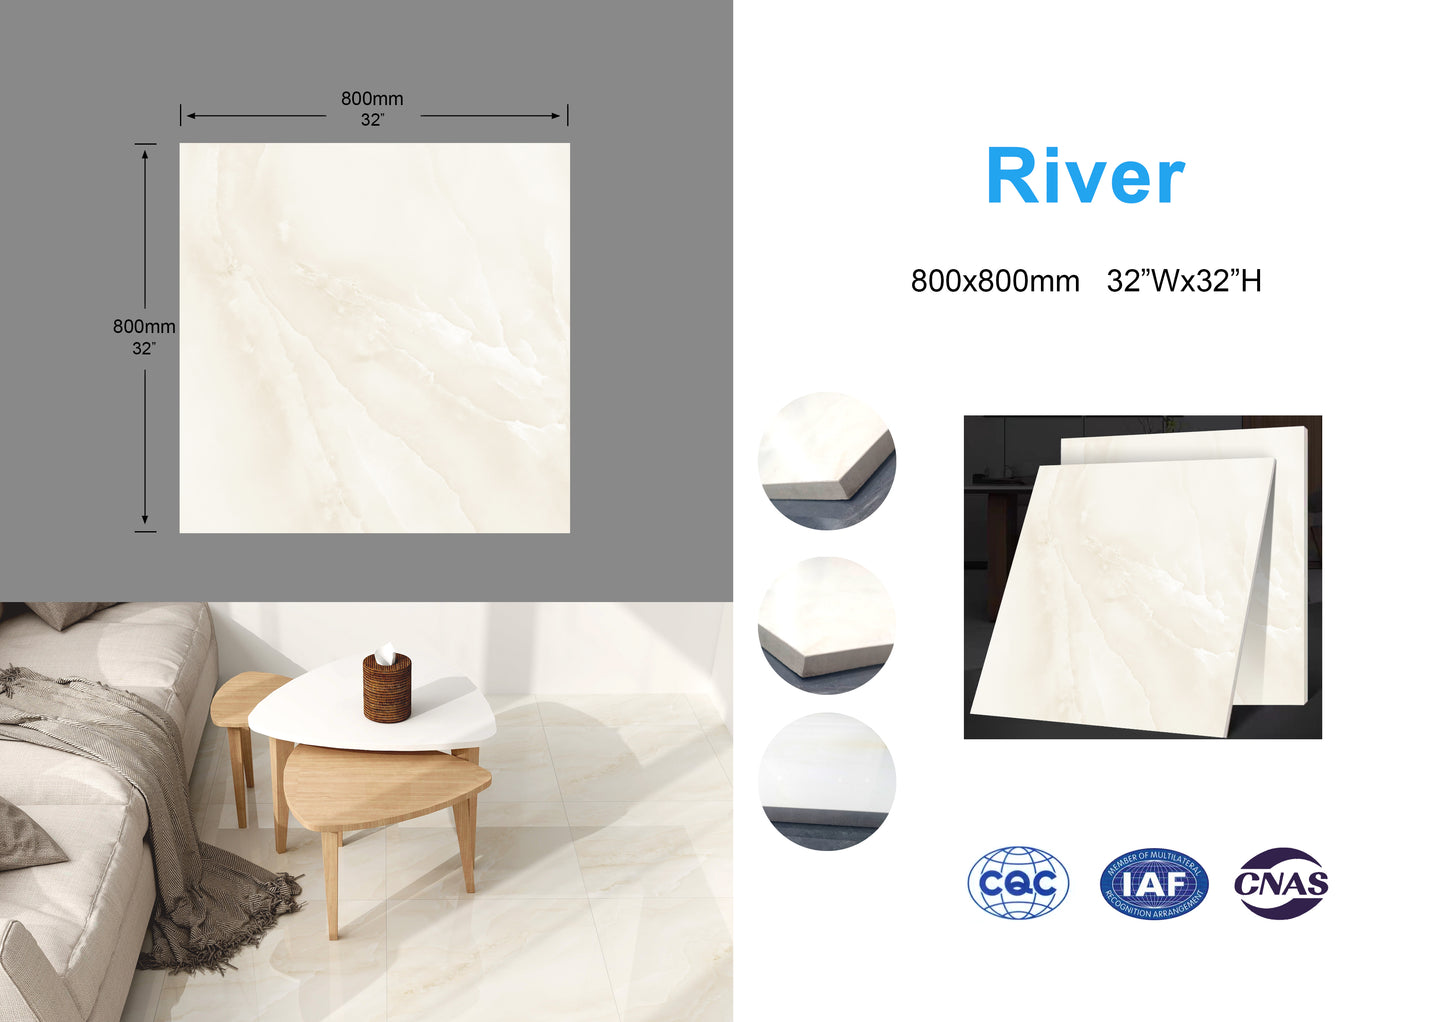 River family Full Polished Glazed Tile 32"x32" 3pcs/box 21.33sf/box $1.79/sf